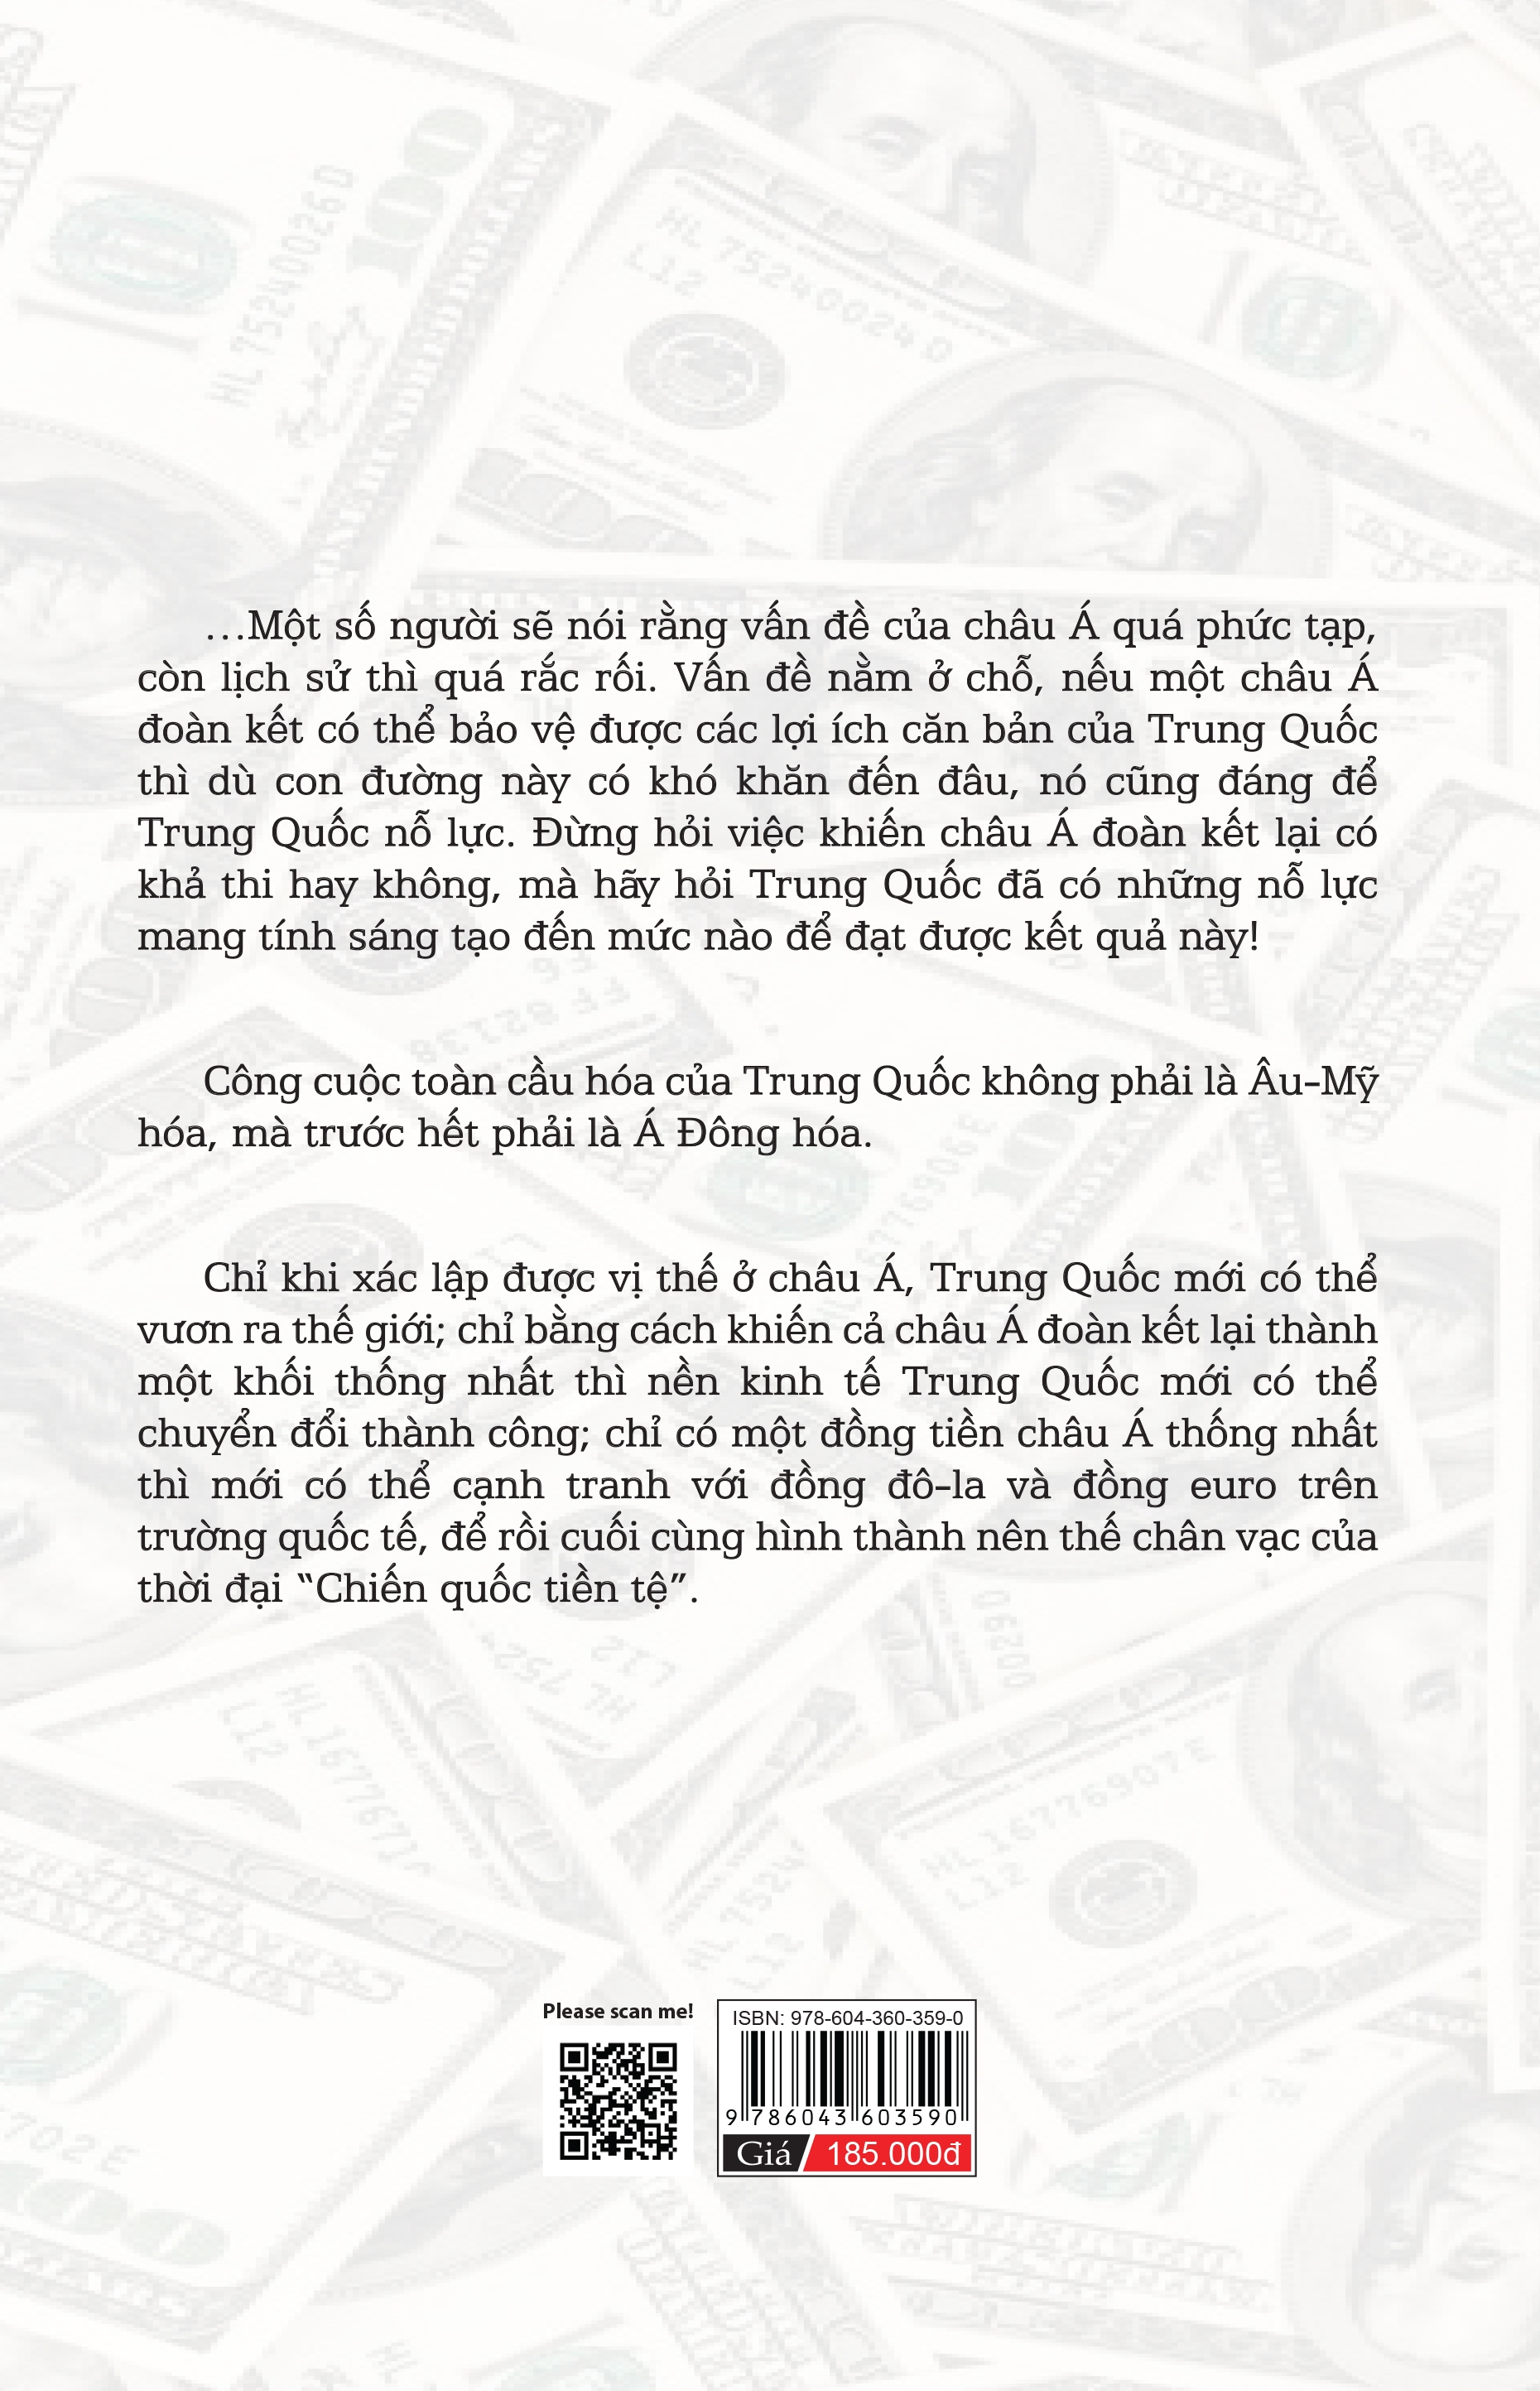 Chiến Tranh Tiền Tệ Phần 4 - Siêu Cường Tài Chính - Tham Vọng Về Đồng Tiền Chung Châu Á